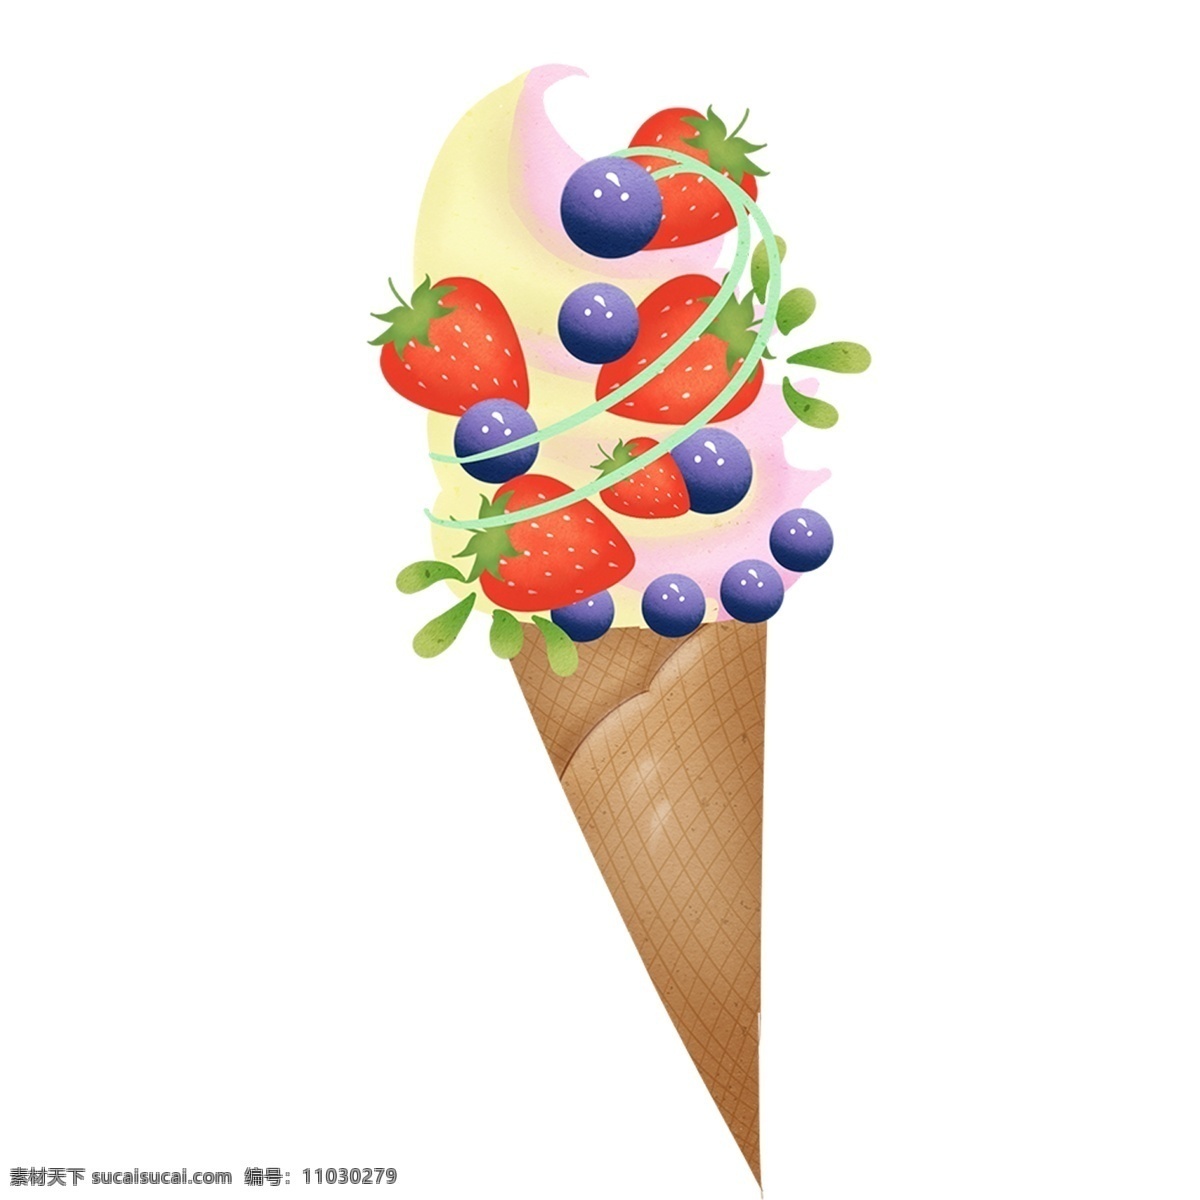 美味 水果 冰淇淋 装饰 元素 装饰元素 手绘 蓝莓 草莓 蛋壳 蛋卷